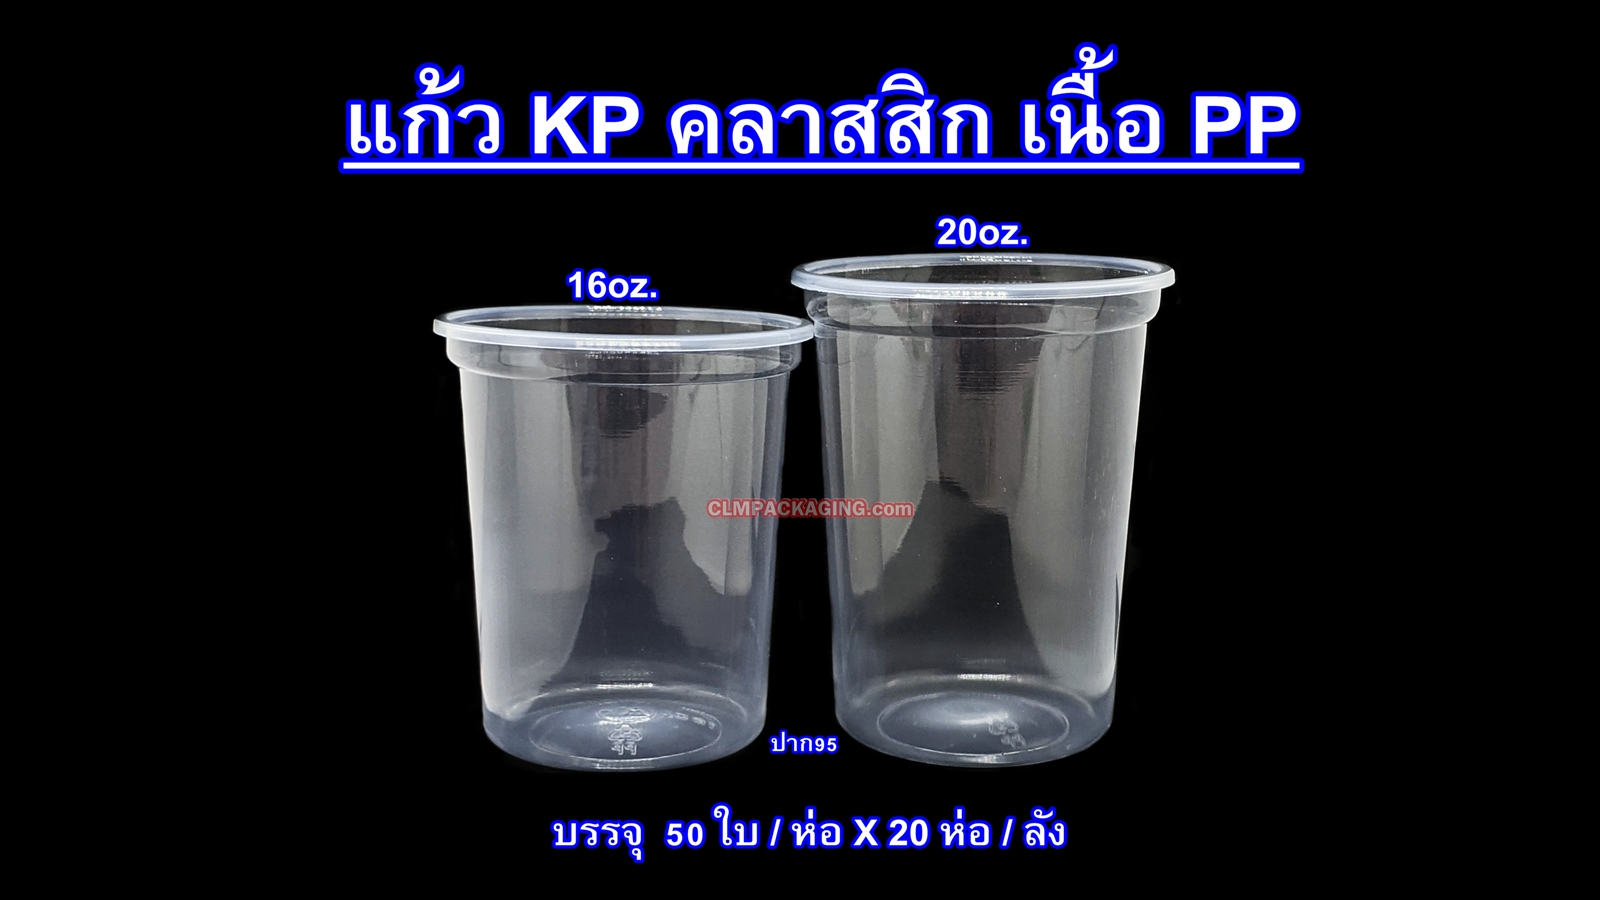 แก้ว Kingpack  เนื้อ PP 16 oz. .ใส เรียบ ปาก 95 mm.